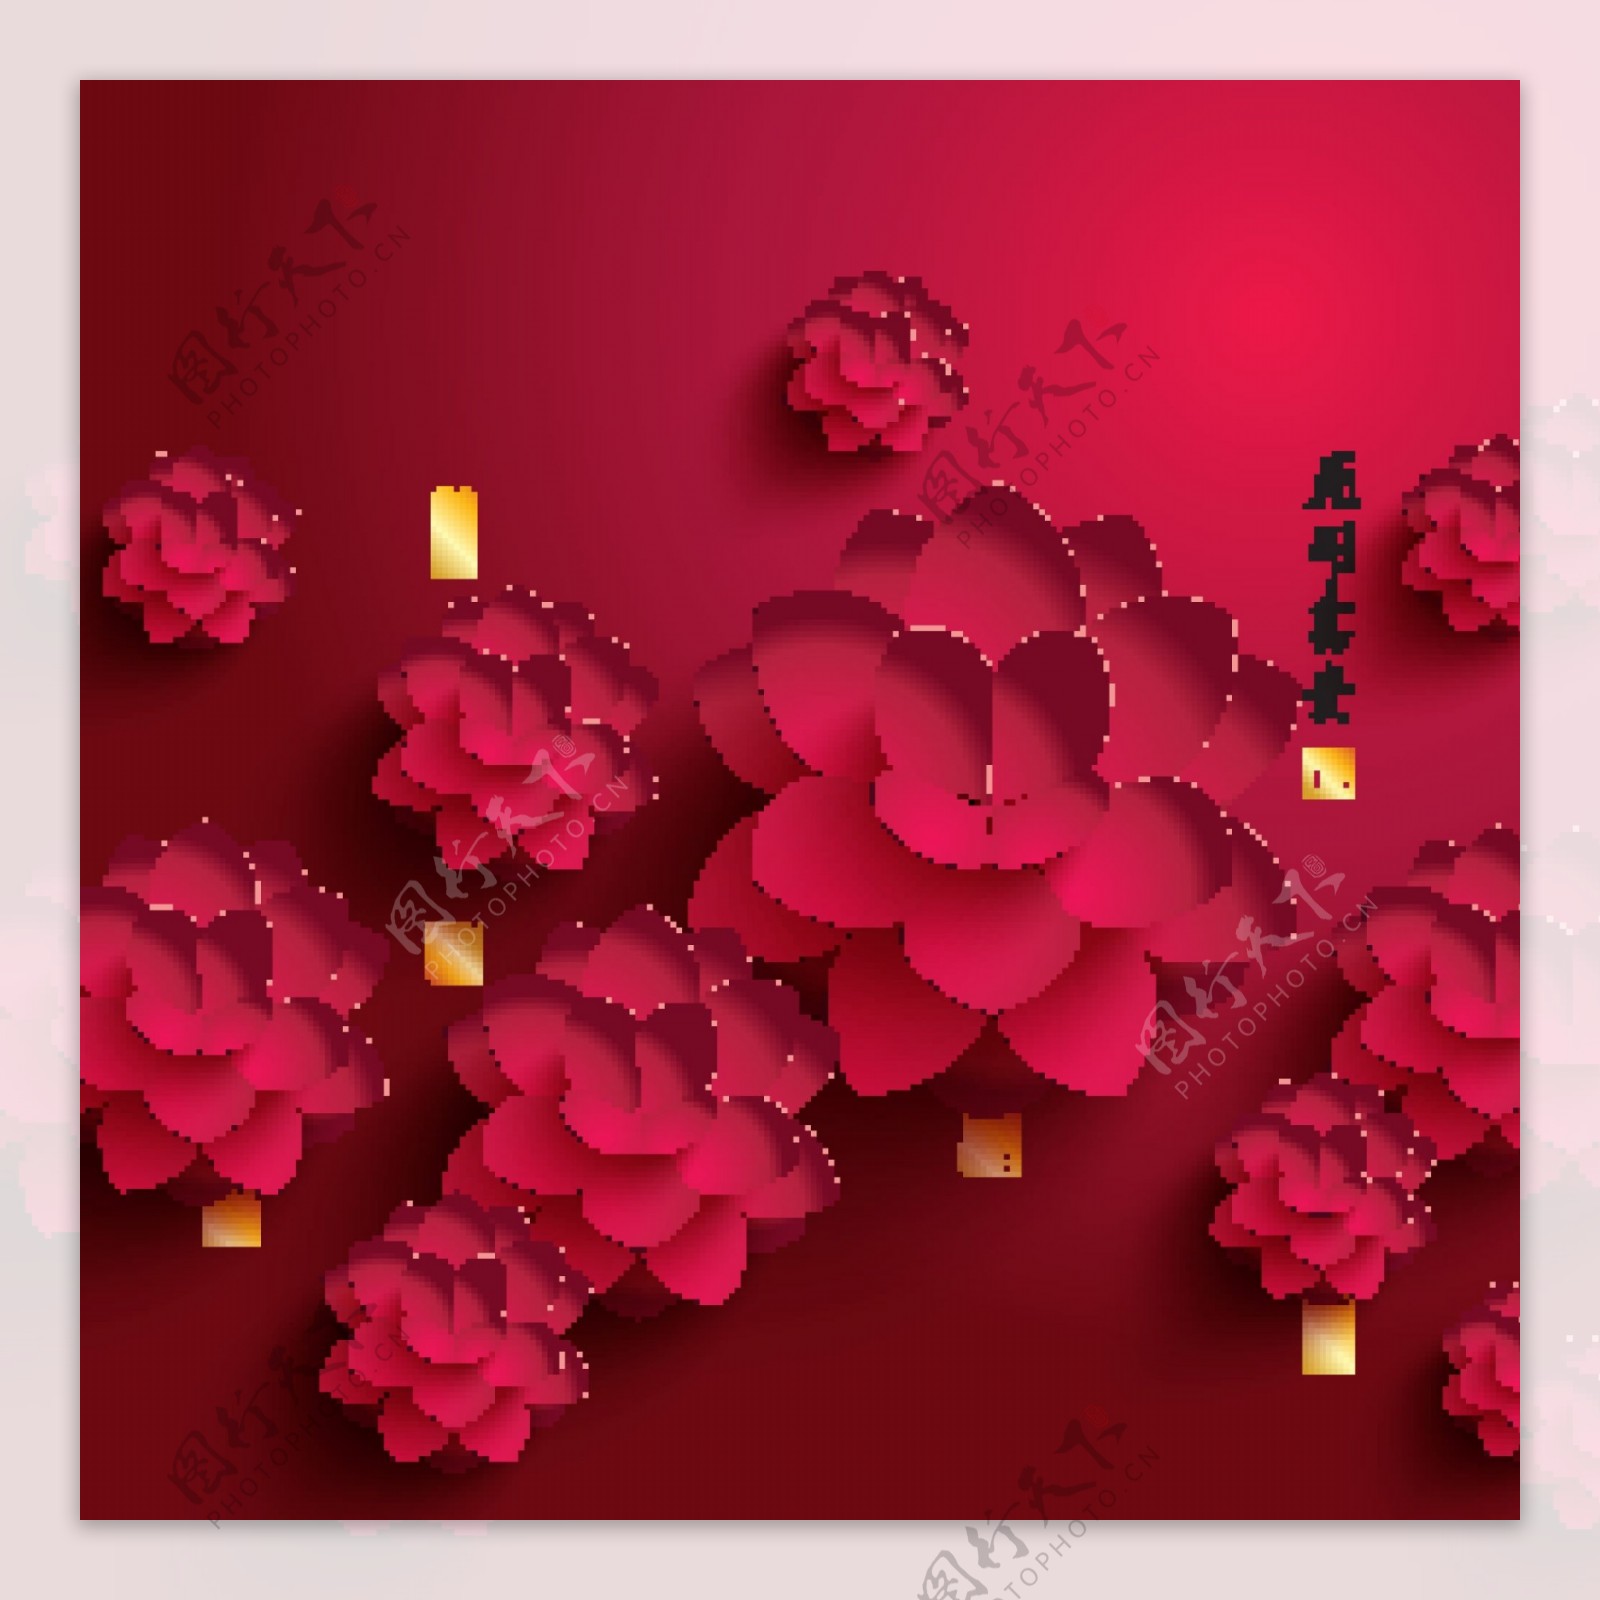 红色花开富贵新年背景图片